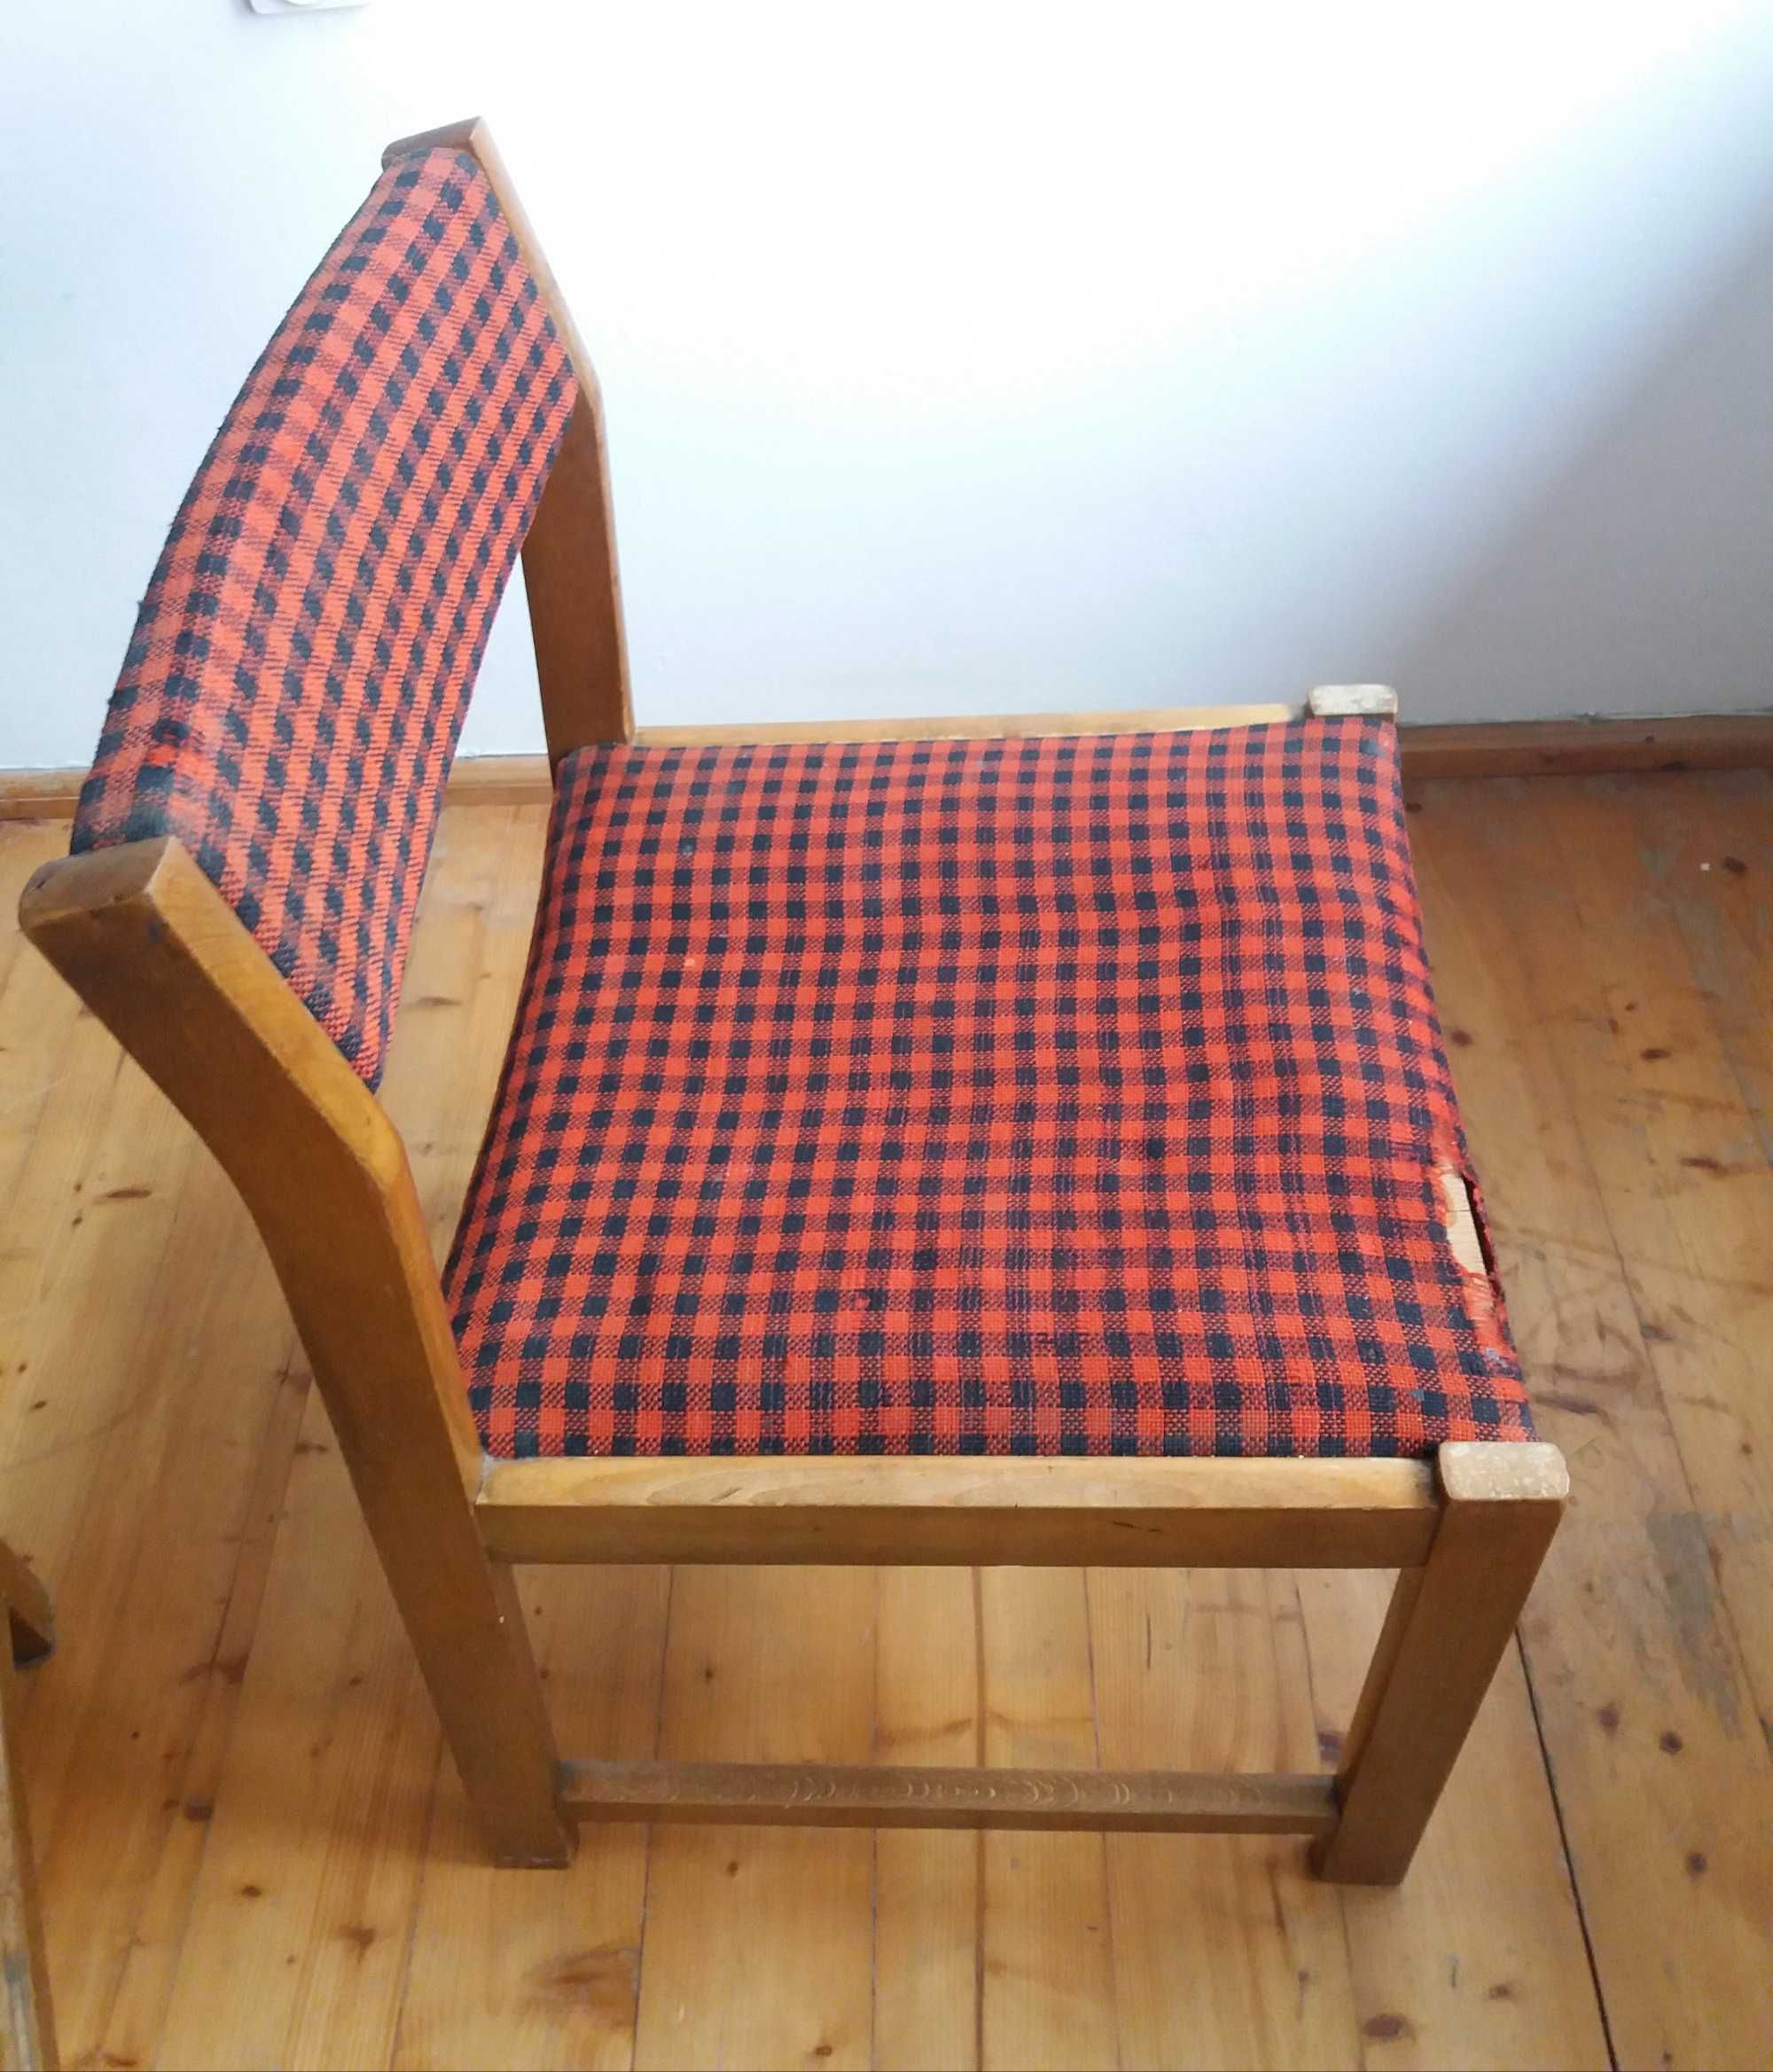 Krzesła dwa tapicerowane,lata 70,solidne